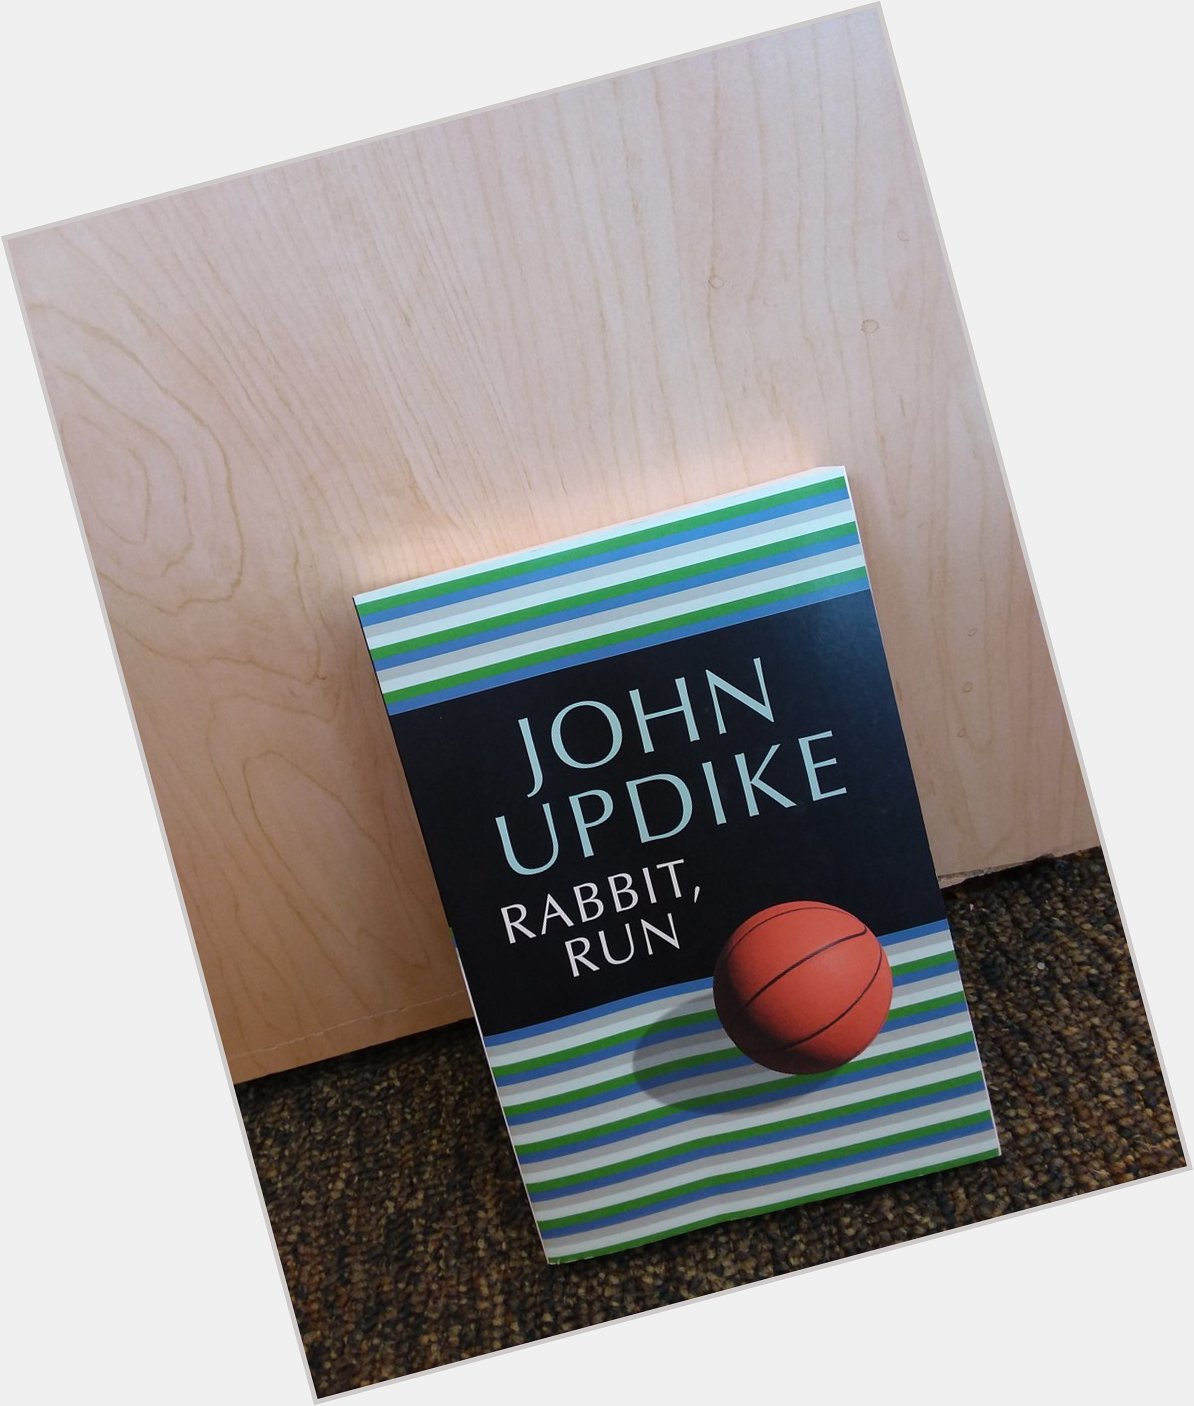 Happy birthday John Updike  # literature 